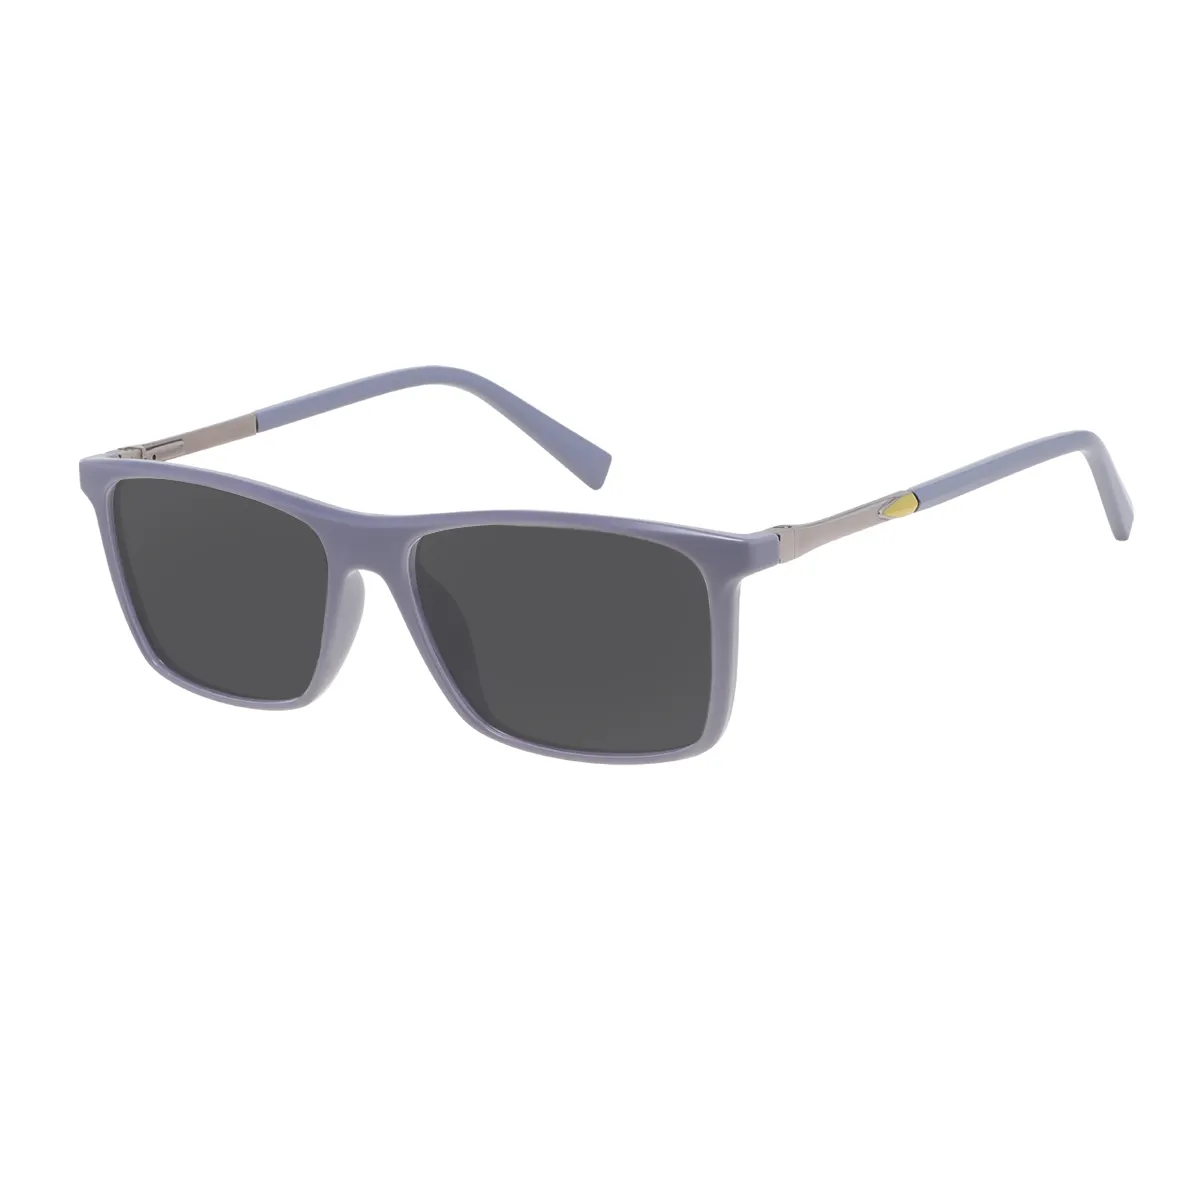 Handy - Rectangle Gray Sunglasses for Men & Women